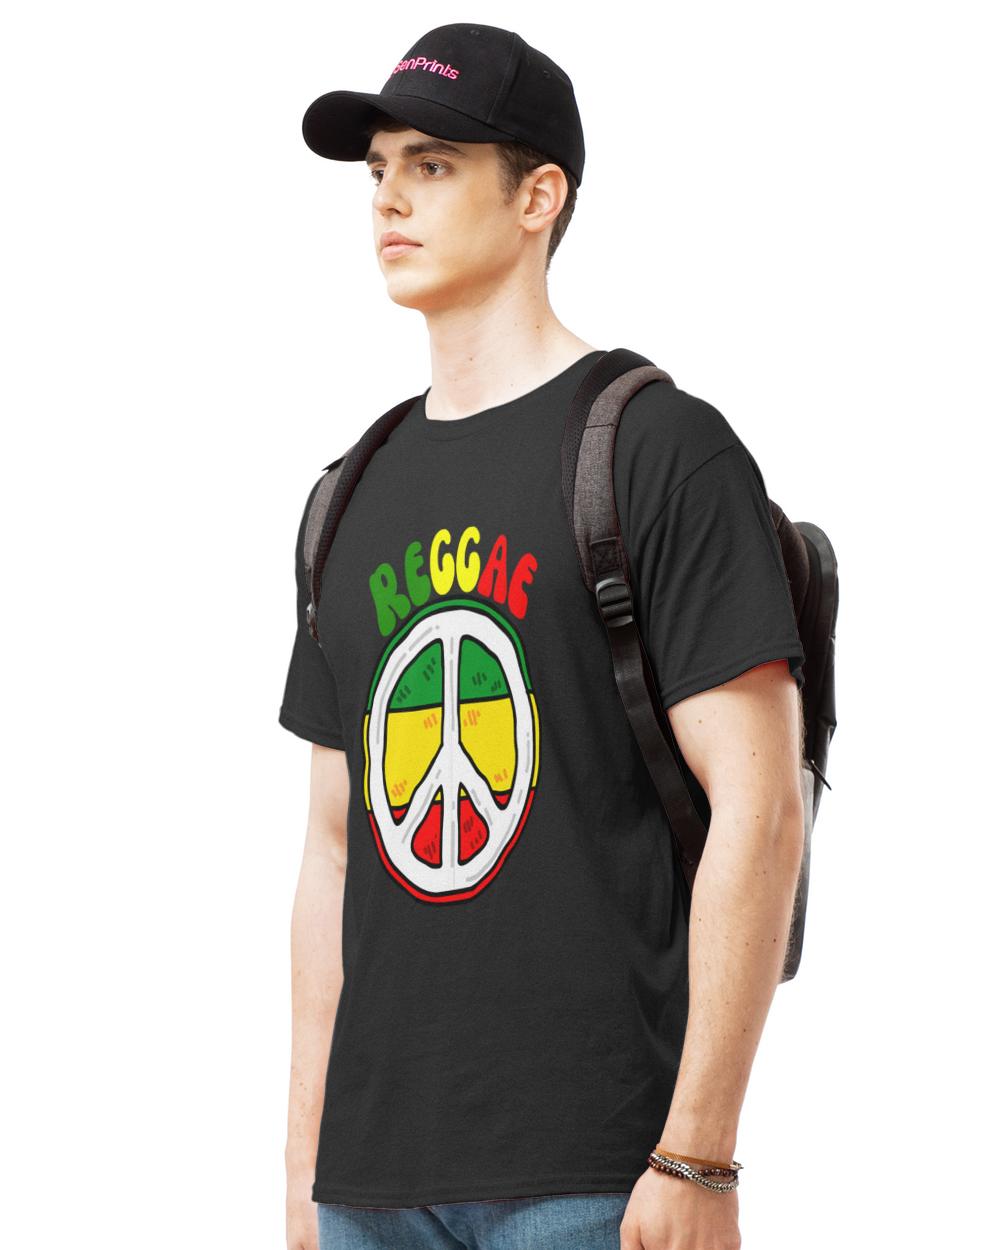 Reggae T- Shirt Reggae Music T- Shirt